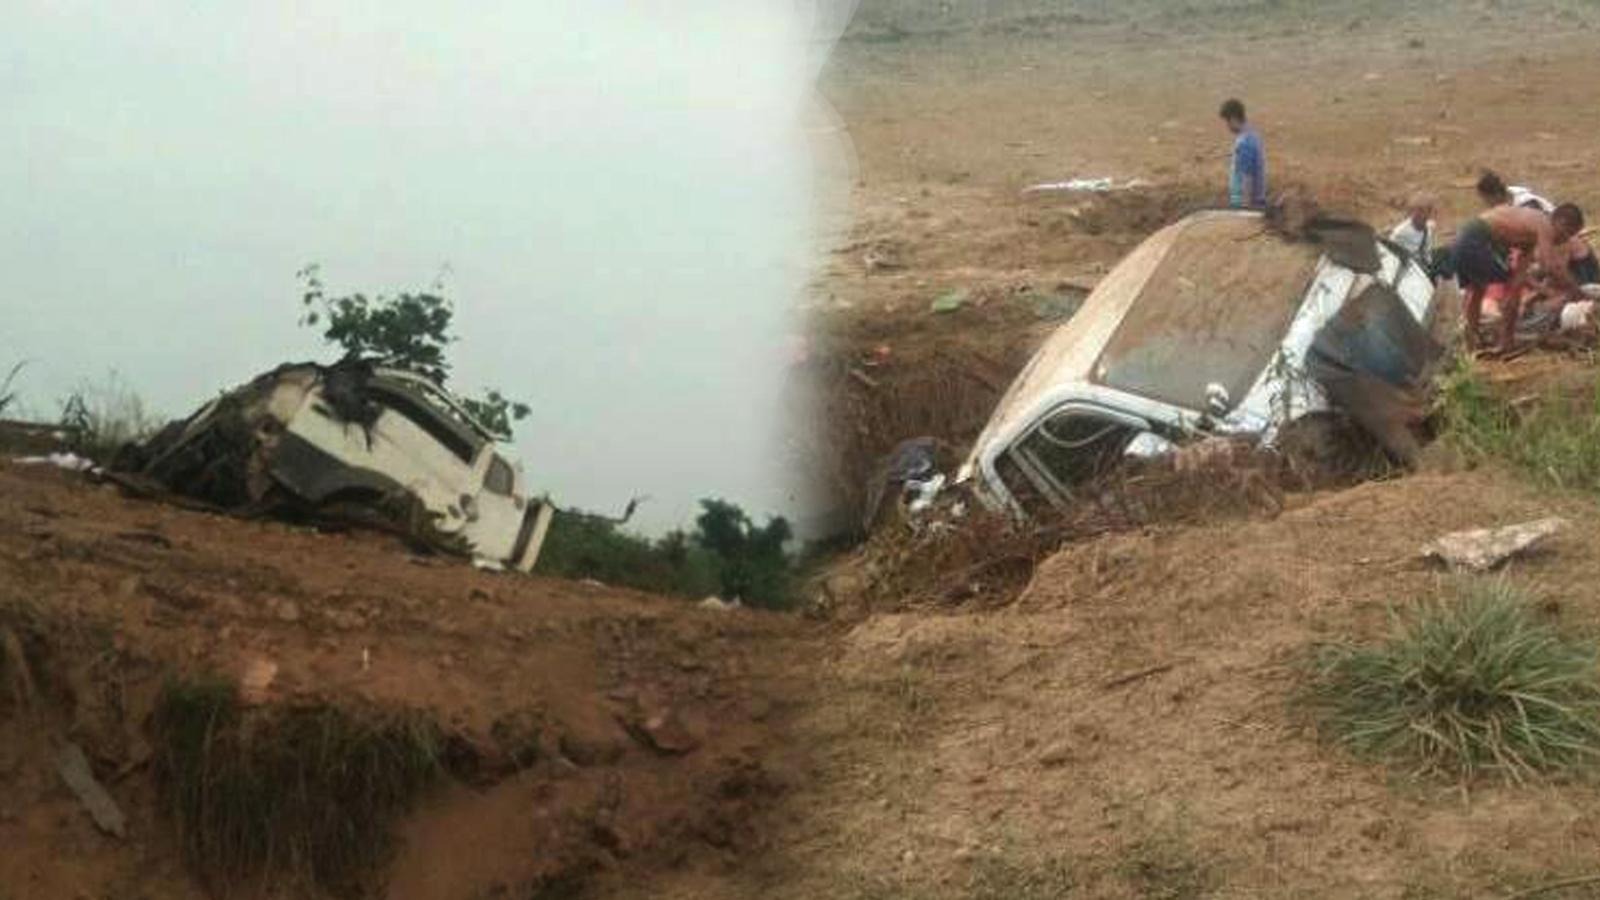 ကျောက်ကြီးမြို့နယ်မှာ လိုက်ထရပ်ကားတစီး မိုင်းထိပြီး ၃ ဦးသေဆုံး